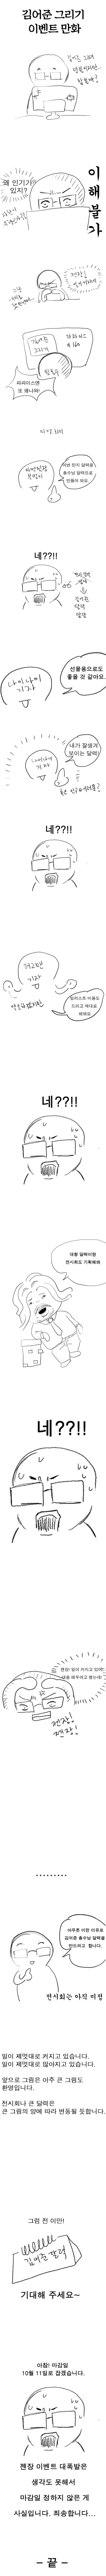 김어준 그리기 대회 만화2탄.jpg